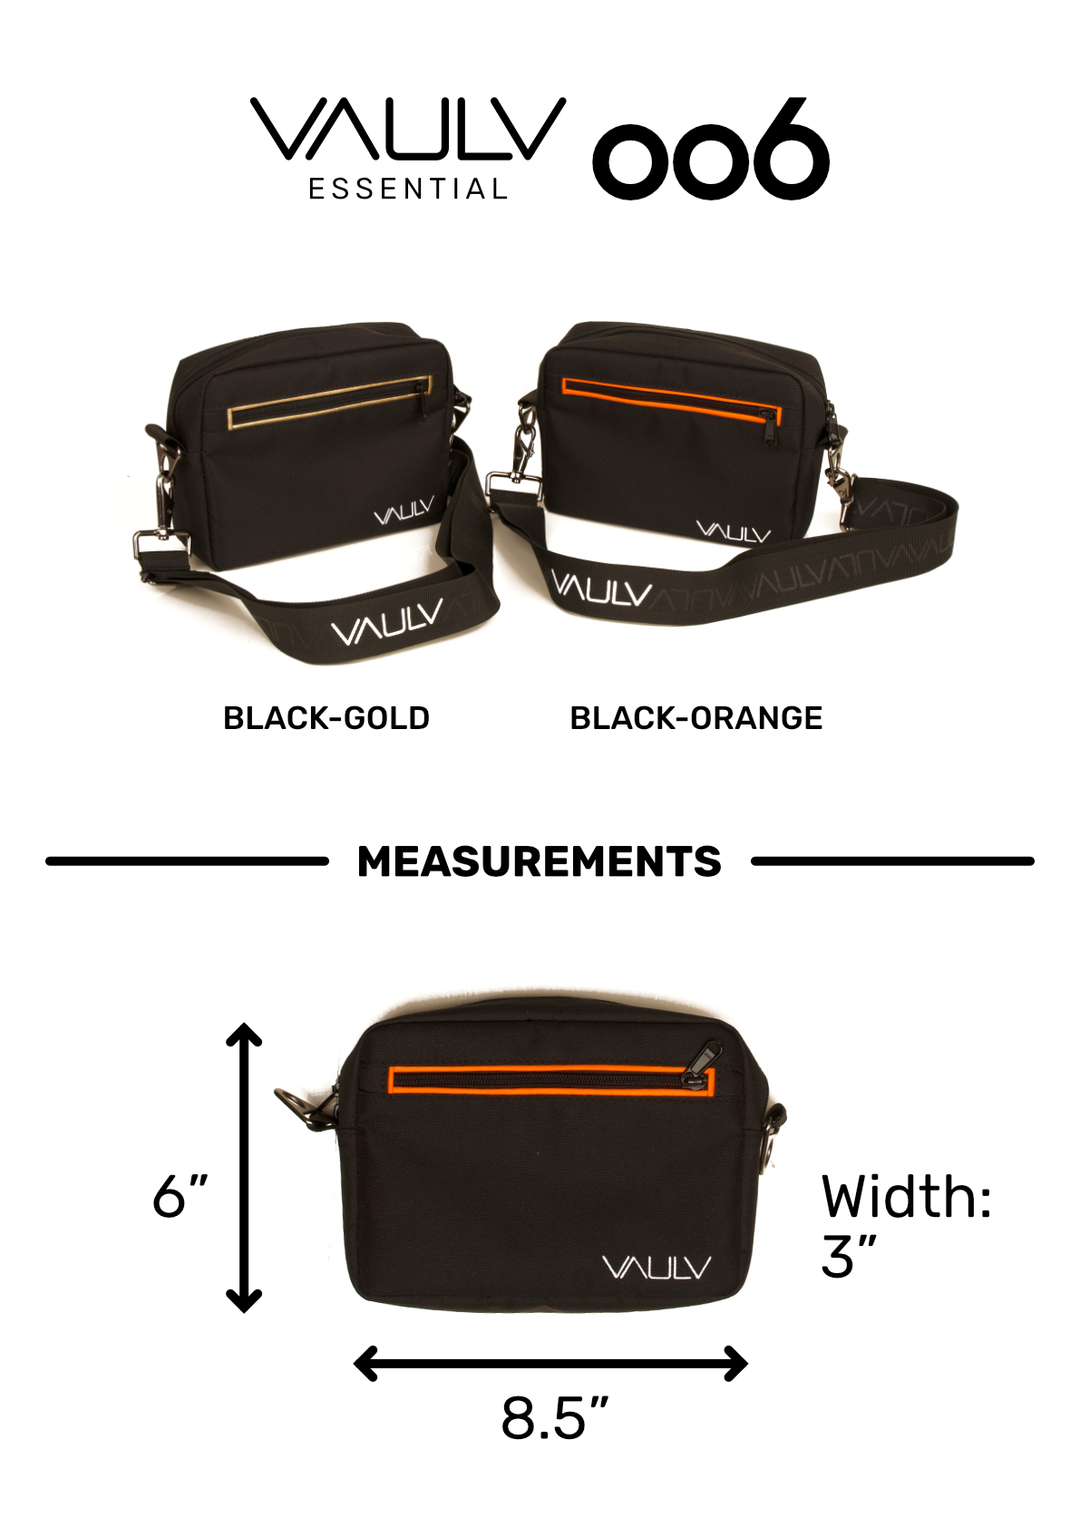 VAULV Essential 006 (Black-Orange)